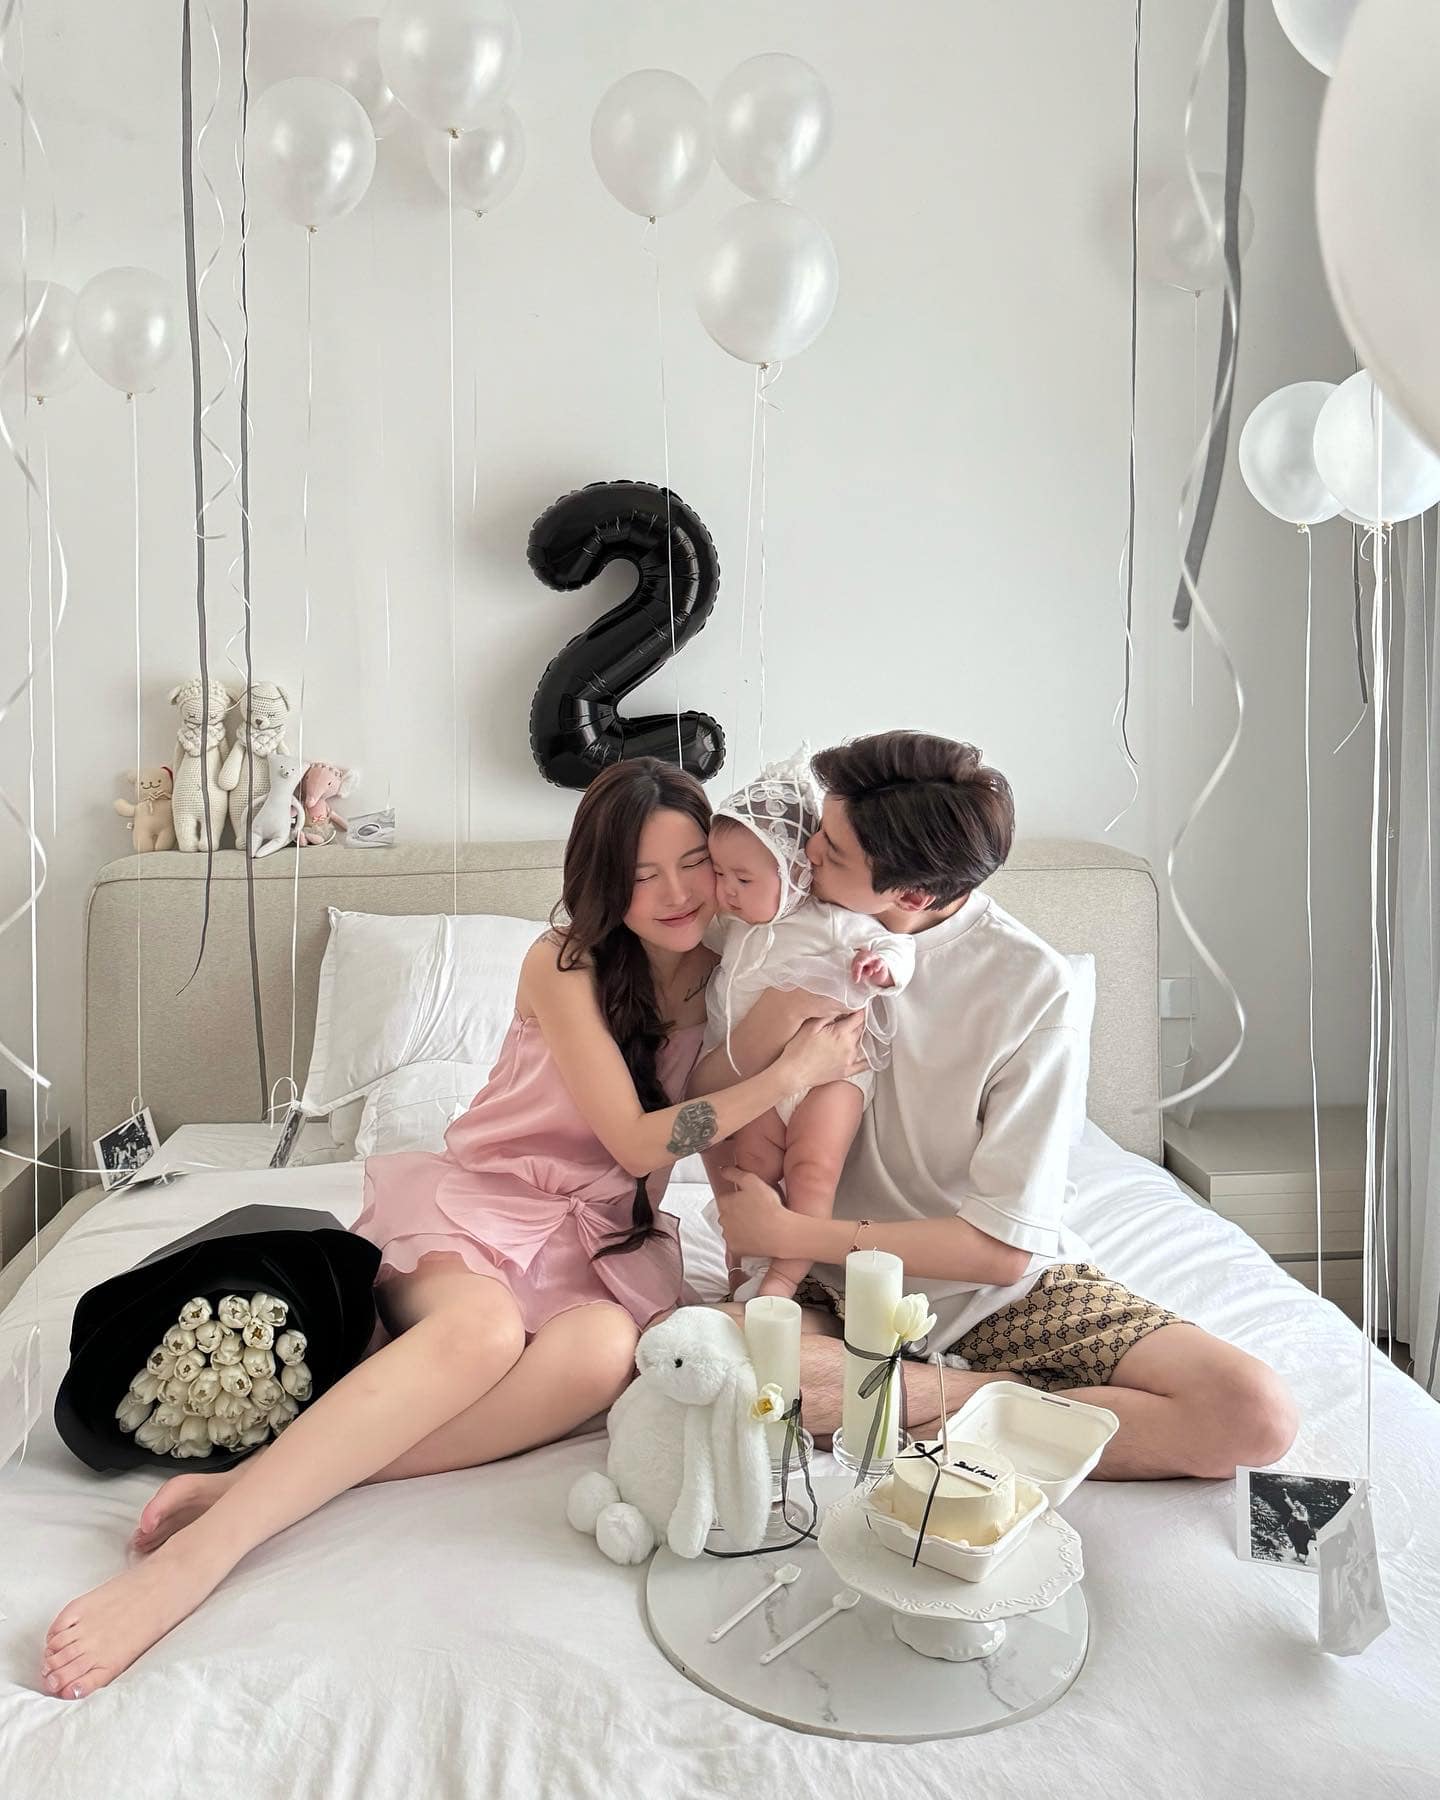 Tuấn Dương mua nhà 7,2 tỷ tặng sinh nhật Lucie Nguyễn, để lộ chuyện chưa đăng ký kết hôn dù đã có con - ảnh 3